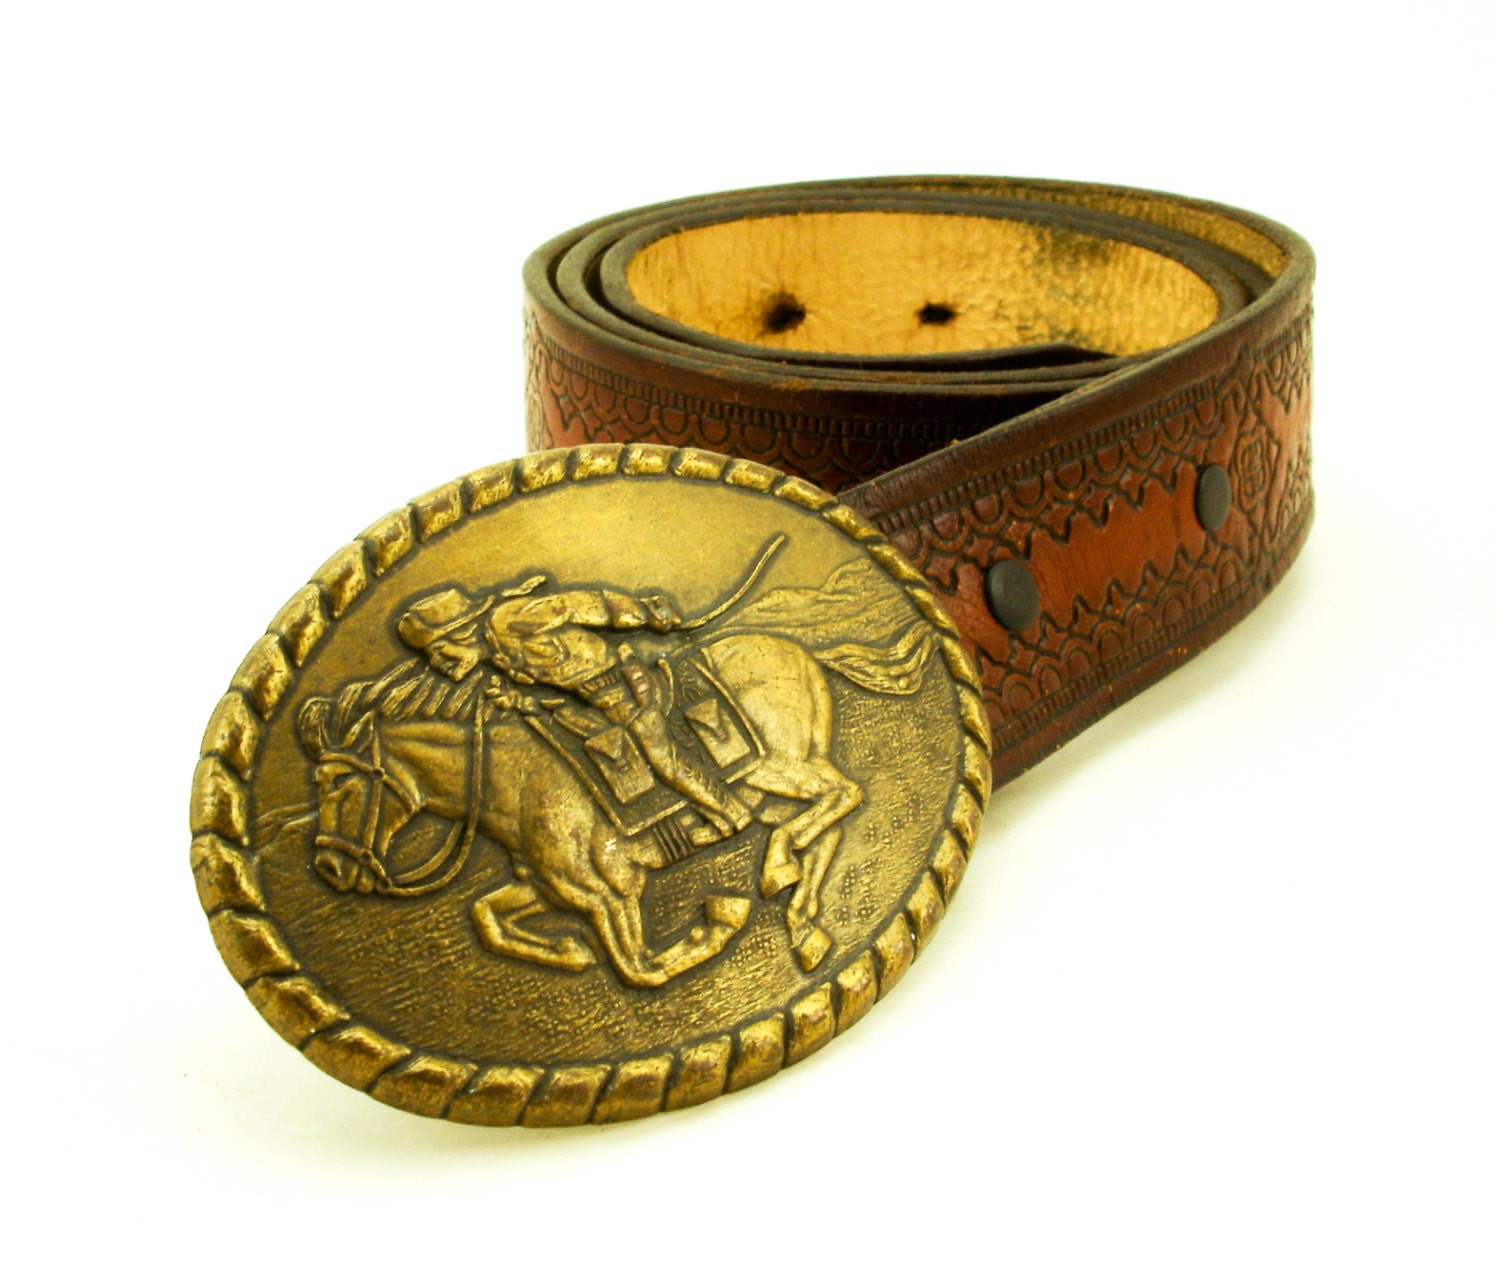 Vintage Cowboy Belt Buckle Antiqued Brass by TheNakedManVintage